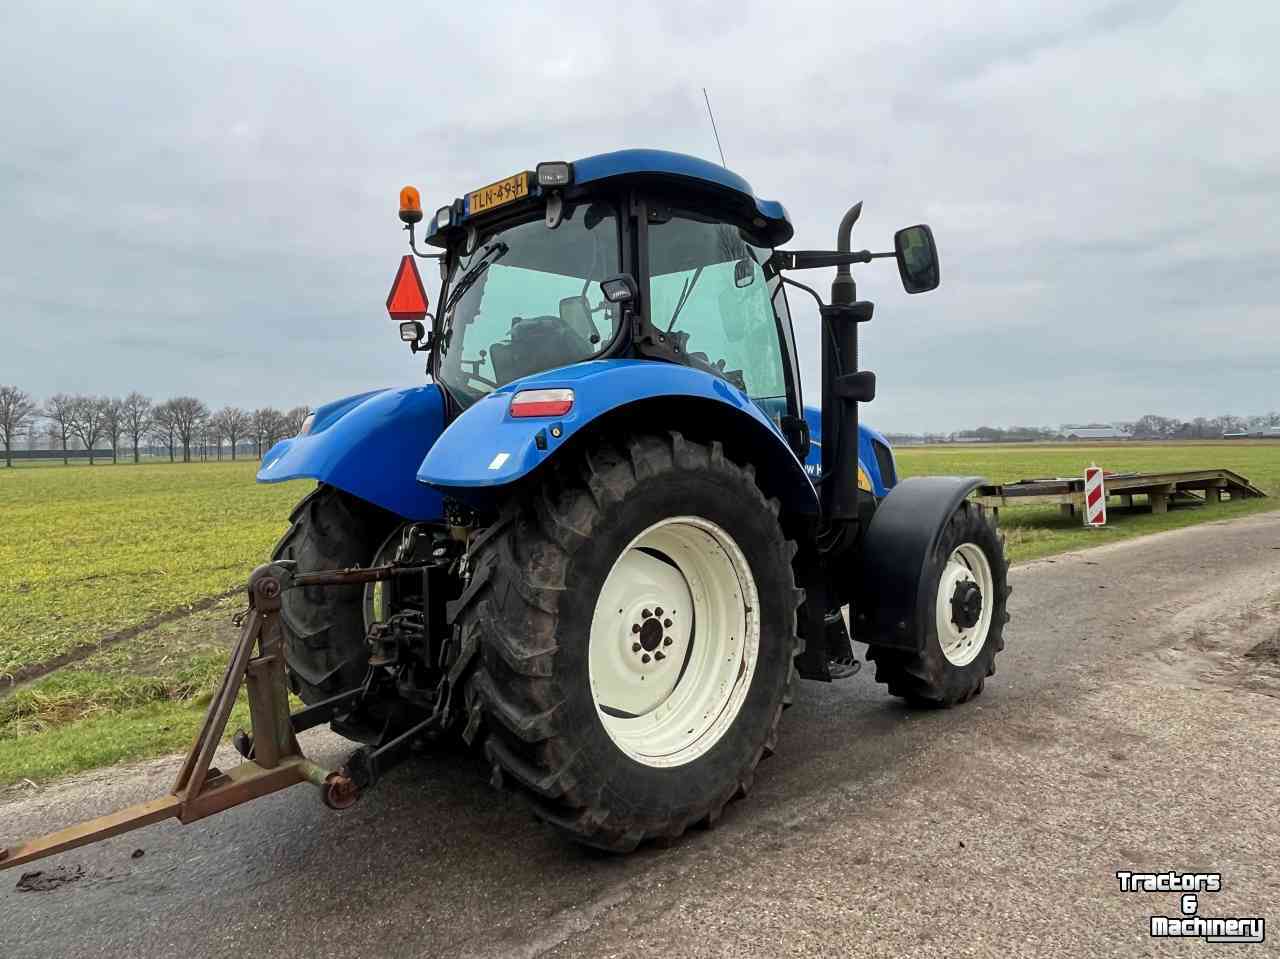 Tractors New Holland TS115A